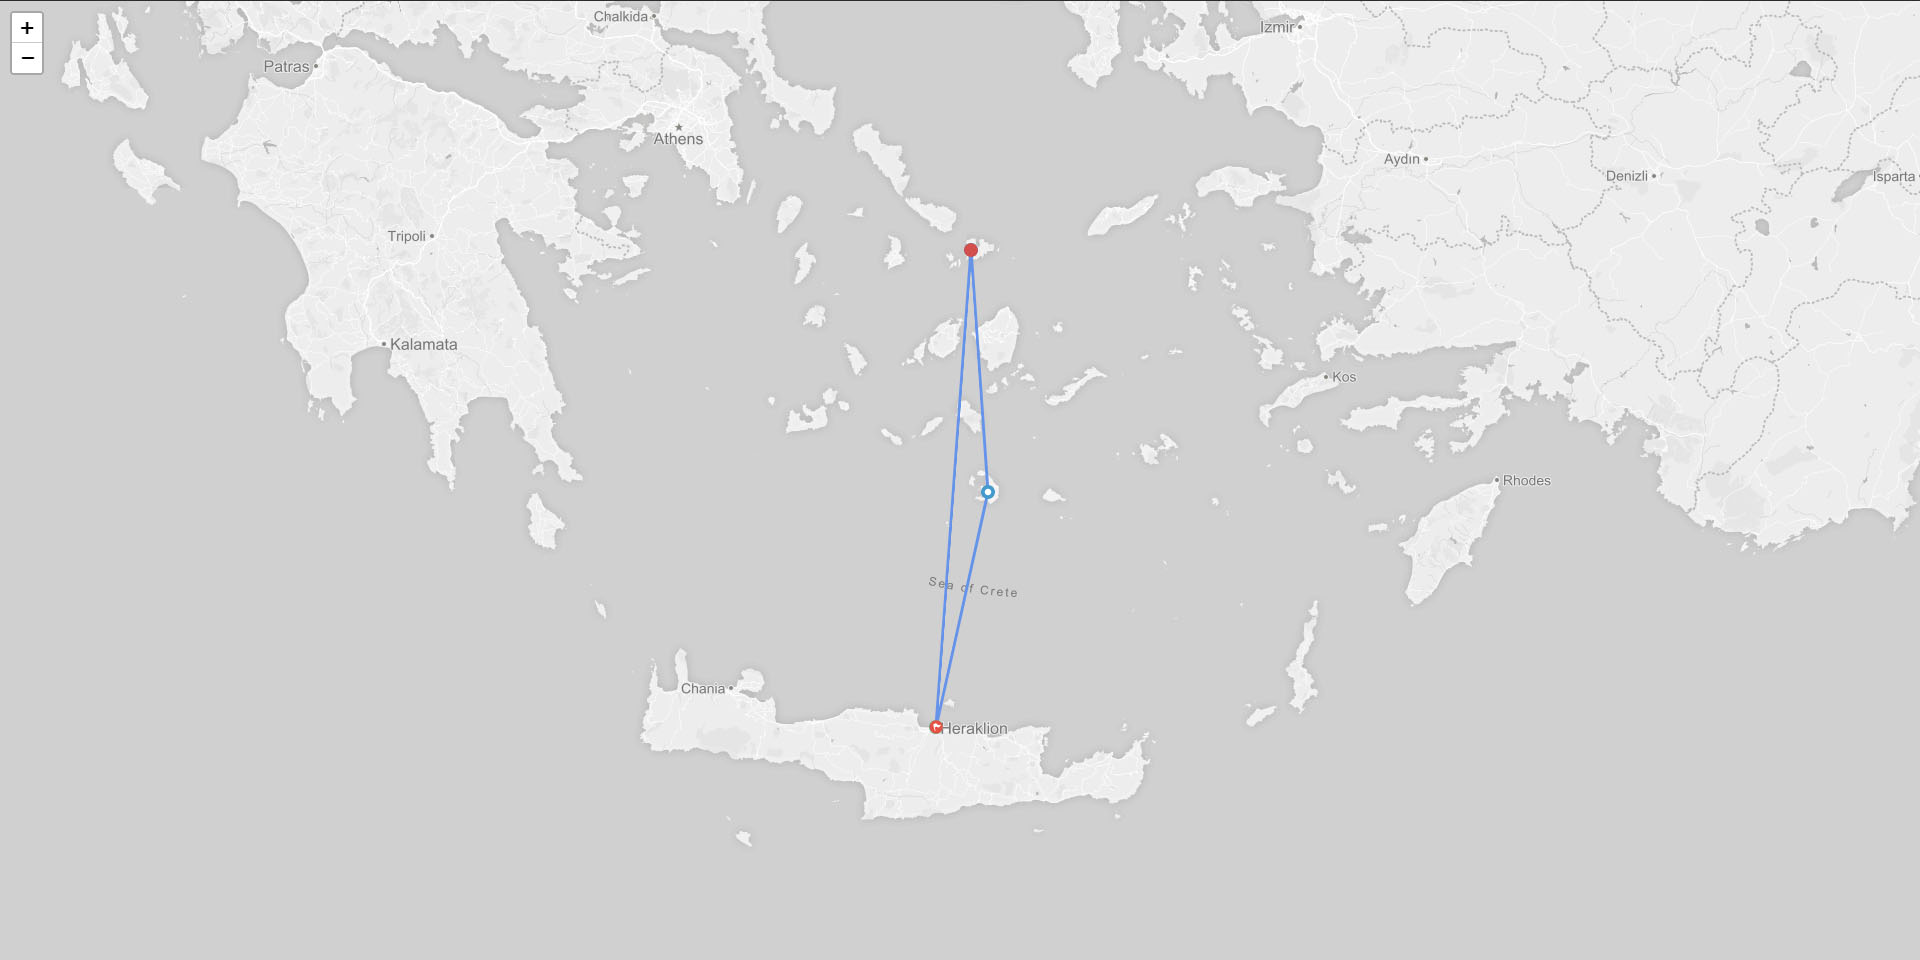 Crete / Santorini / Mykonos / Crete